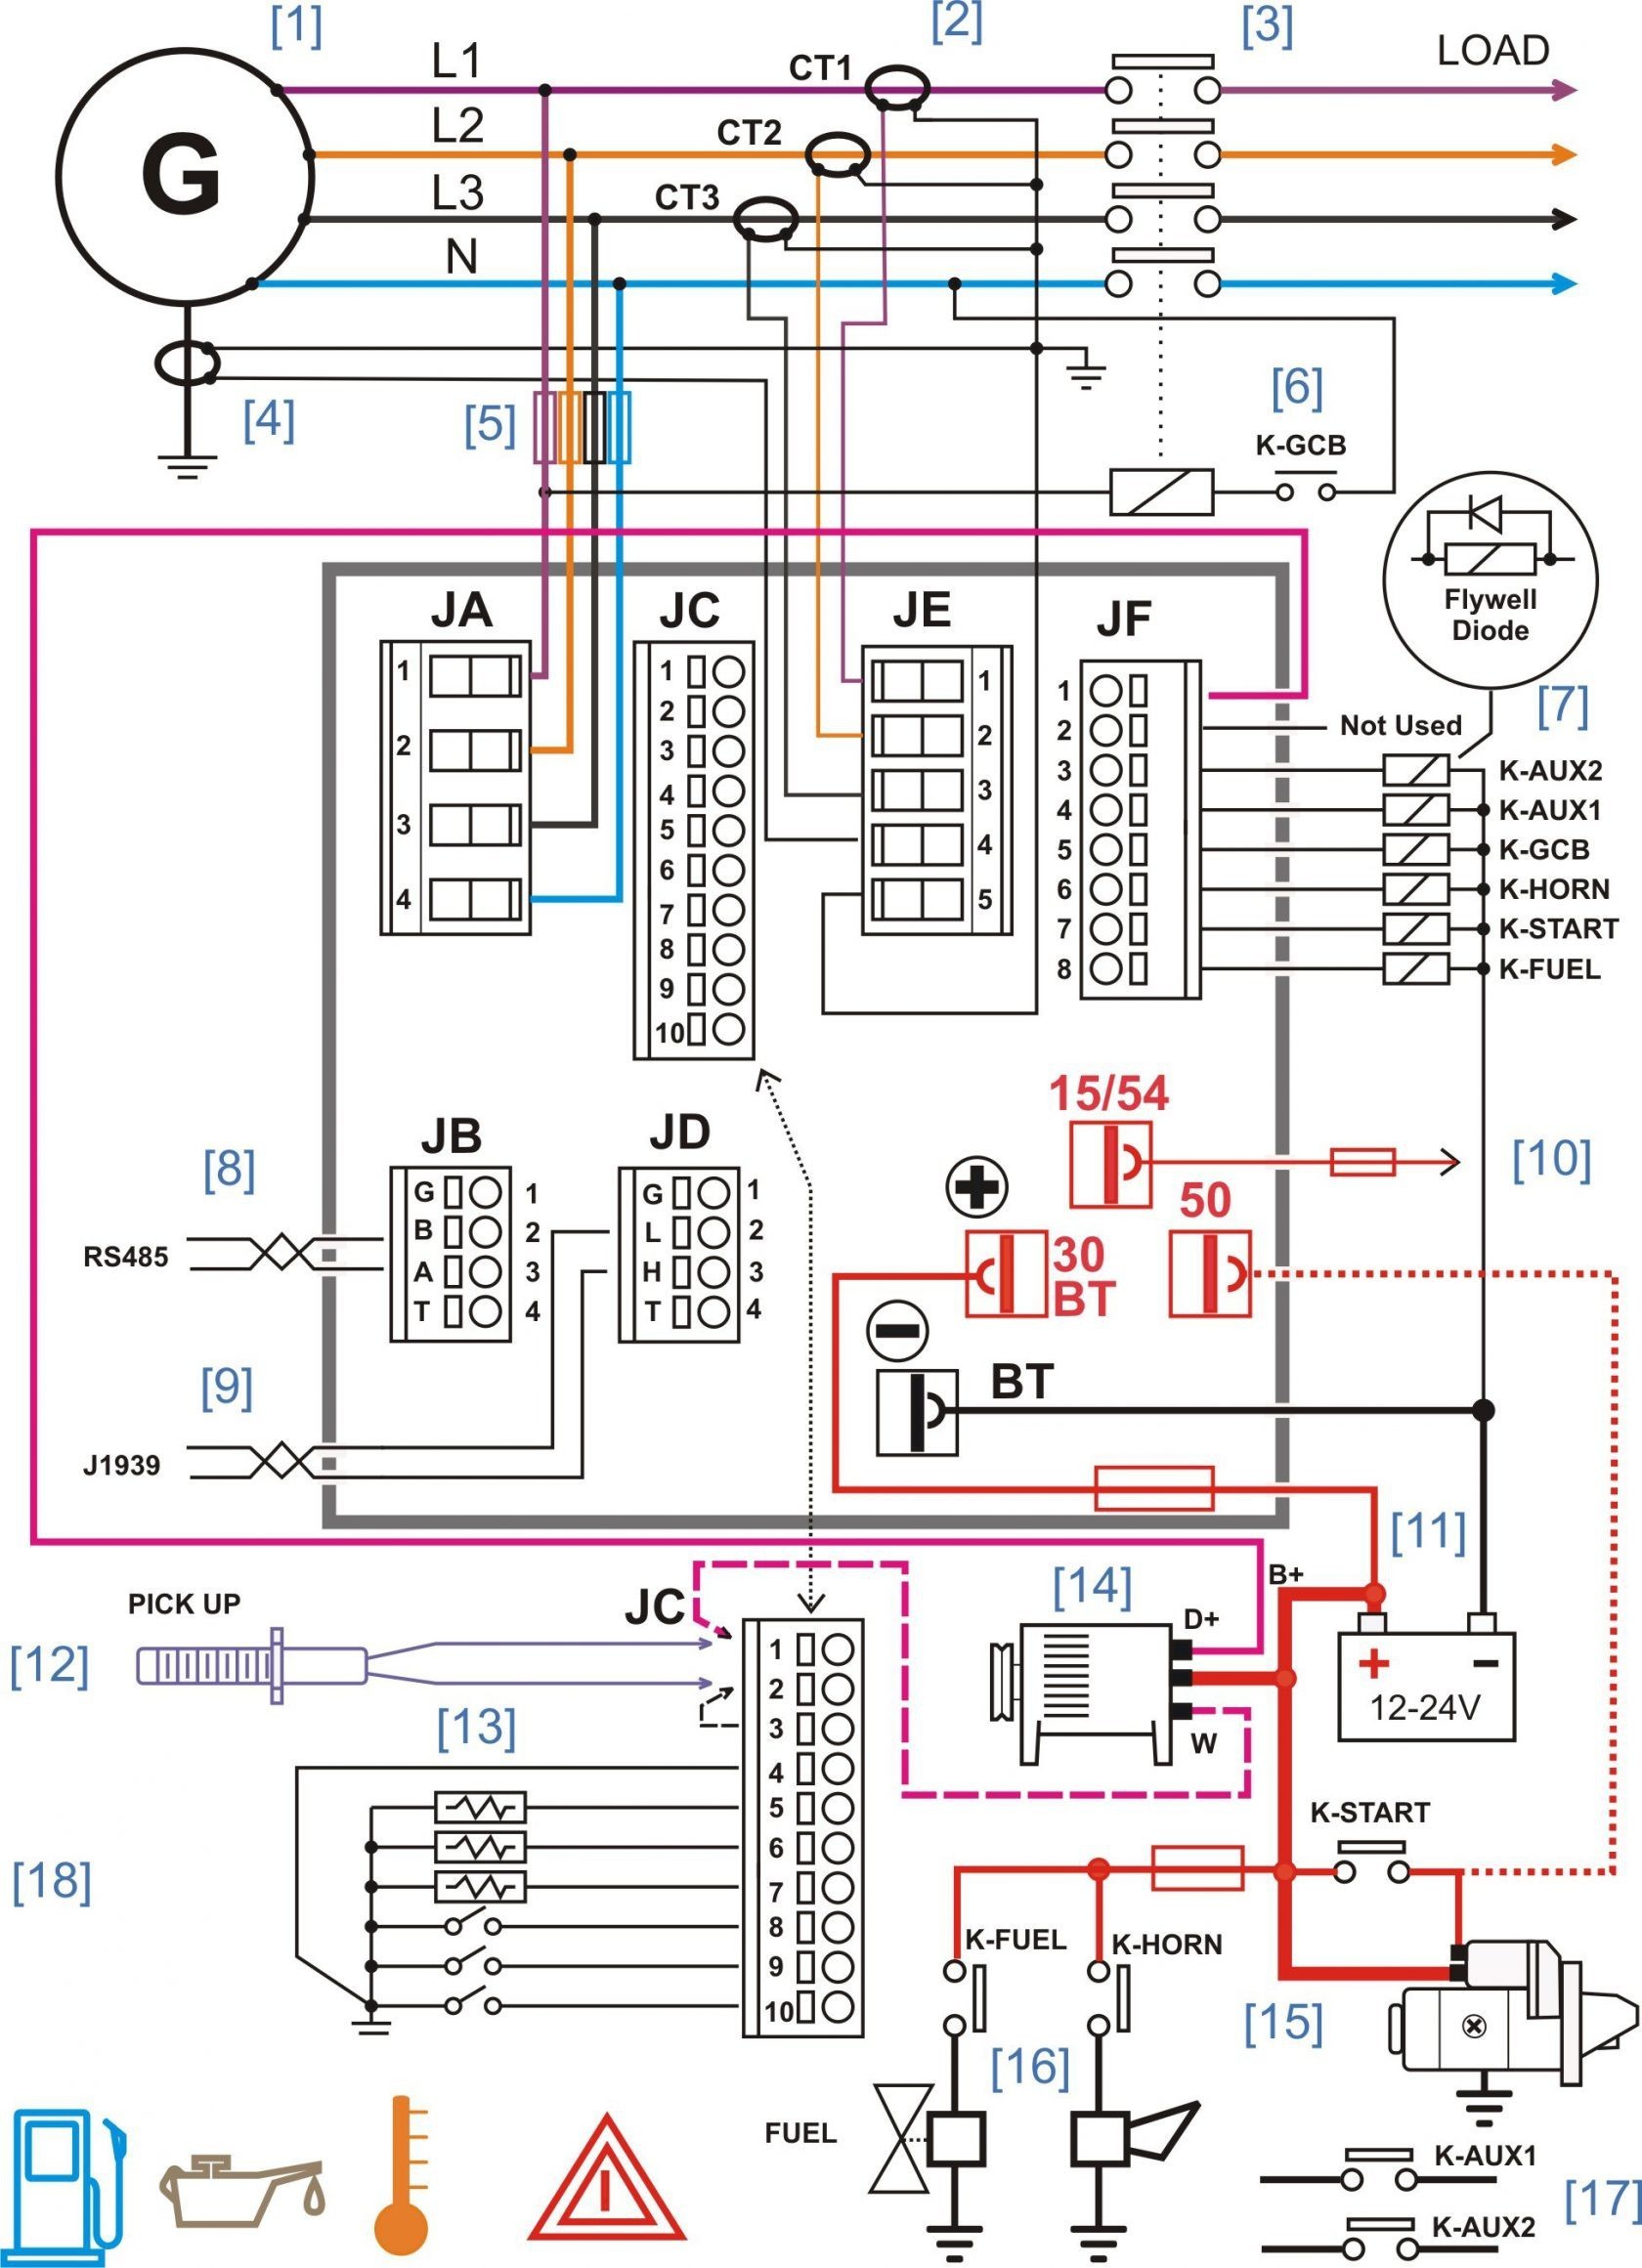 jvc kd x330bts wiring diagram Collection Jvc Kd X330bts Wiring Diagram Download 15 h DOWNLOAD Wiring Diagram Detail Name jvc kd